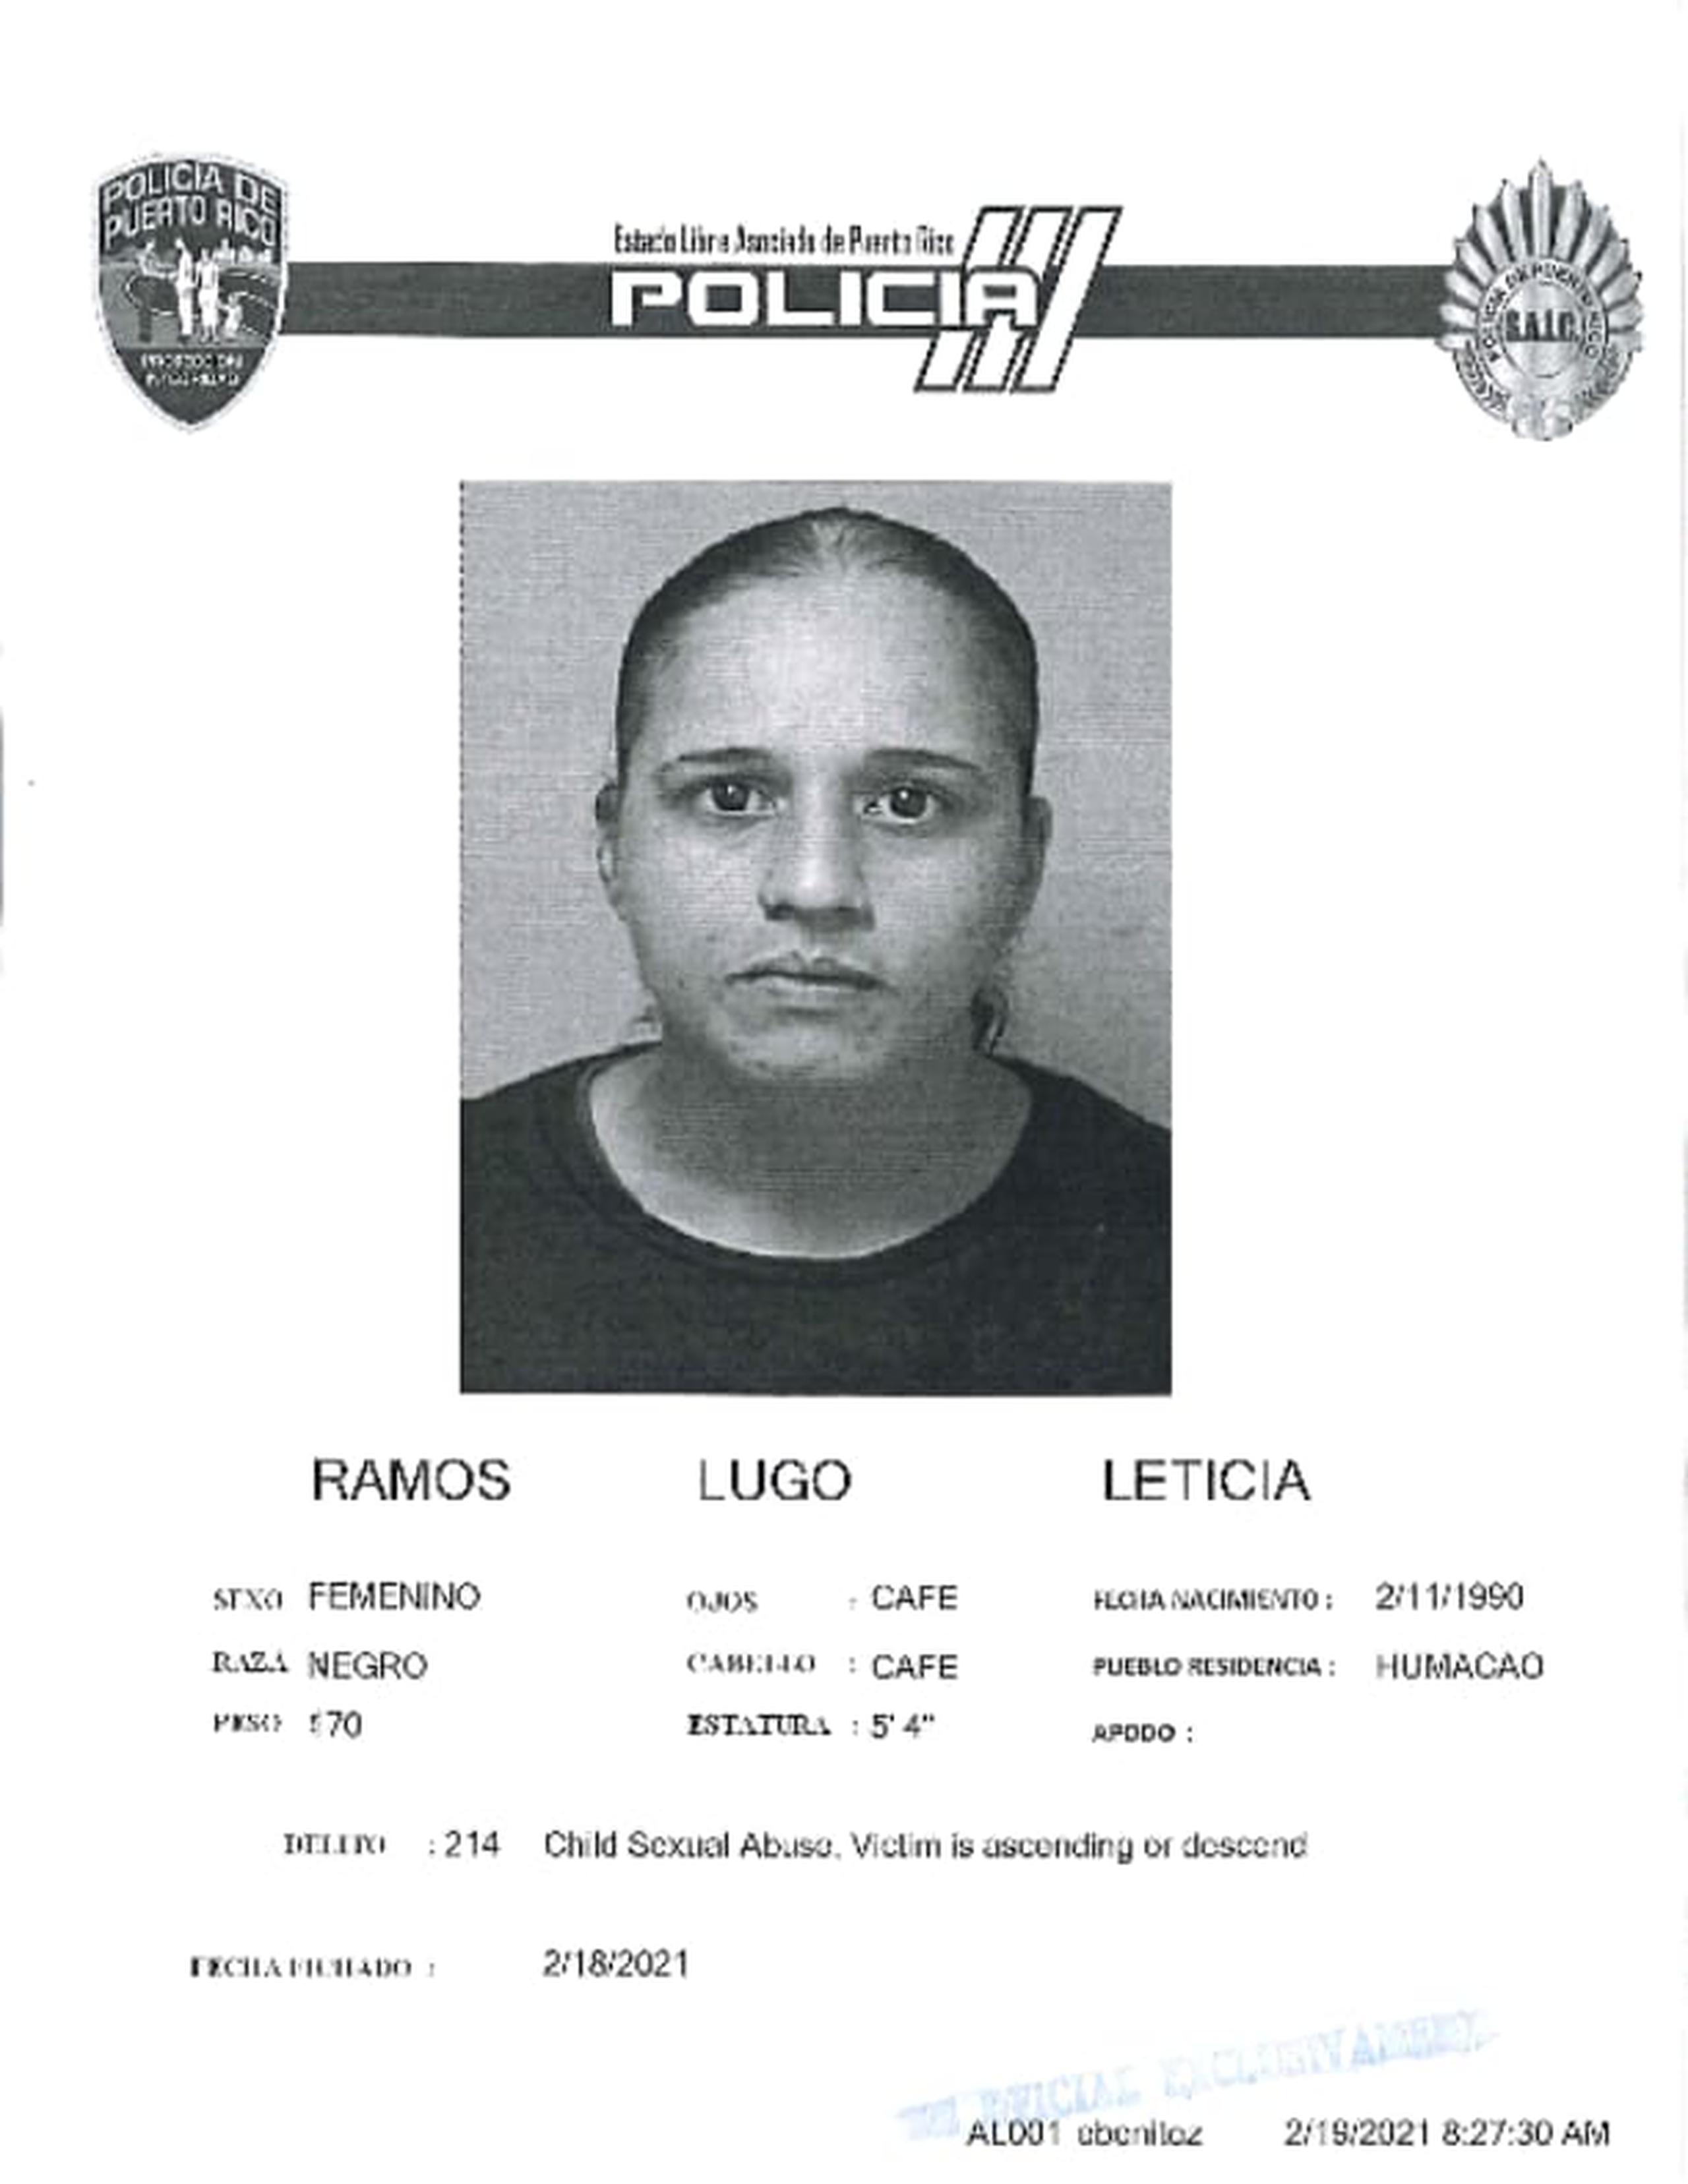 La jueza Enid Rivera, del Tribunal de Humacao, determinó causa para arresto contra Leticia Ramos Lugo por el delito de maltrato de menores y le fijó una fianza de $50,000, la cual no prestó, por lo que fue encarcelada.